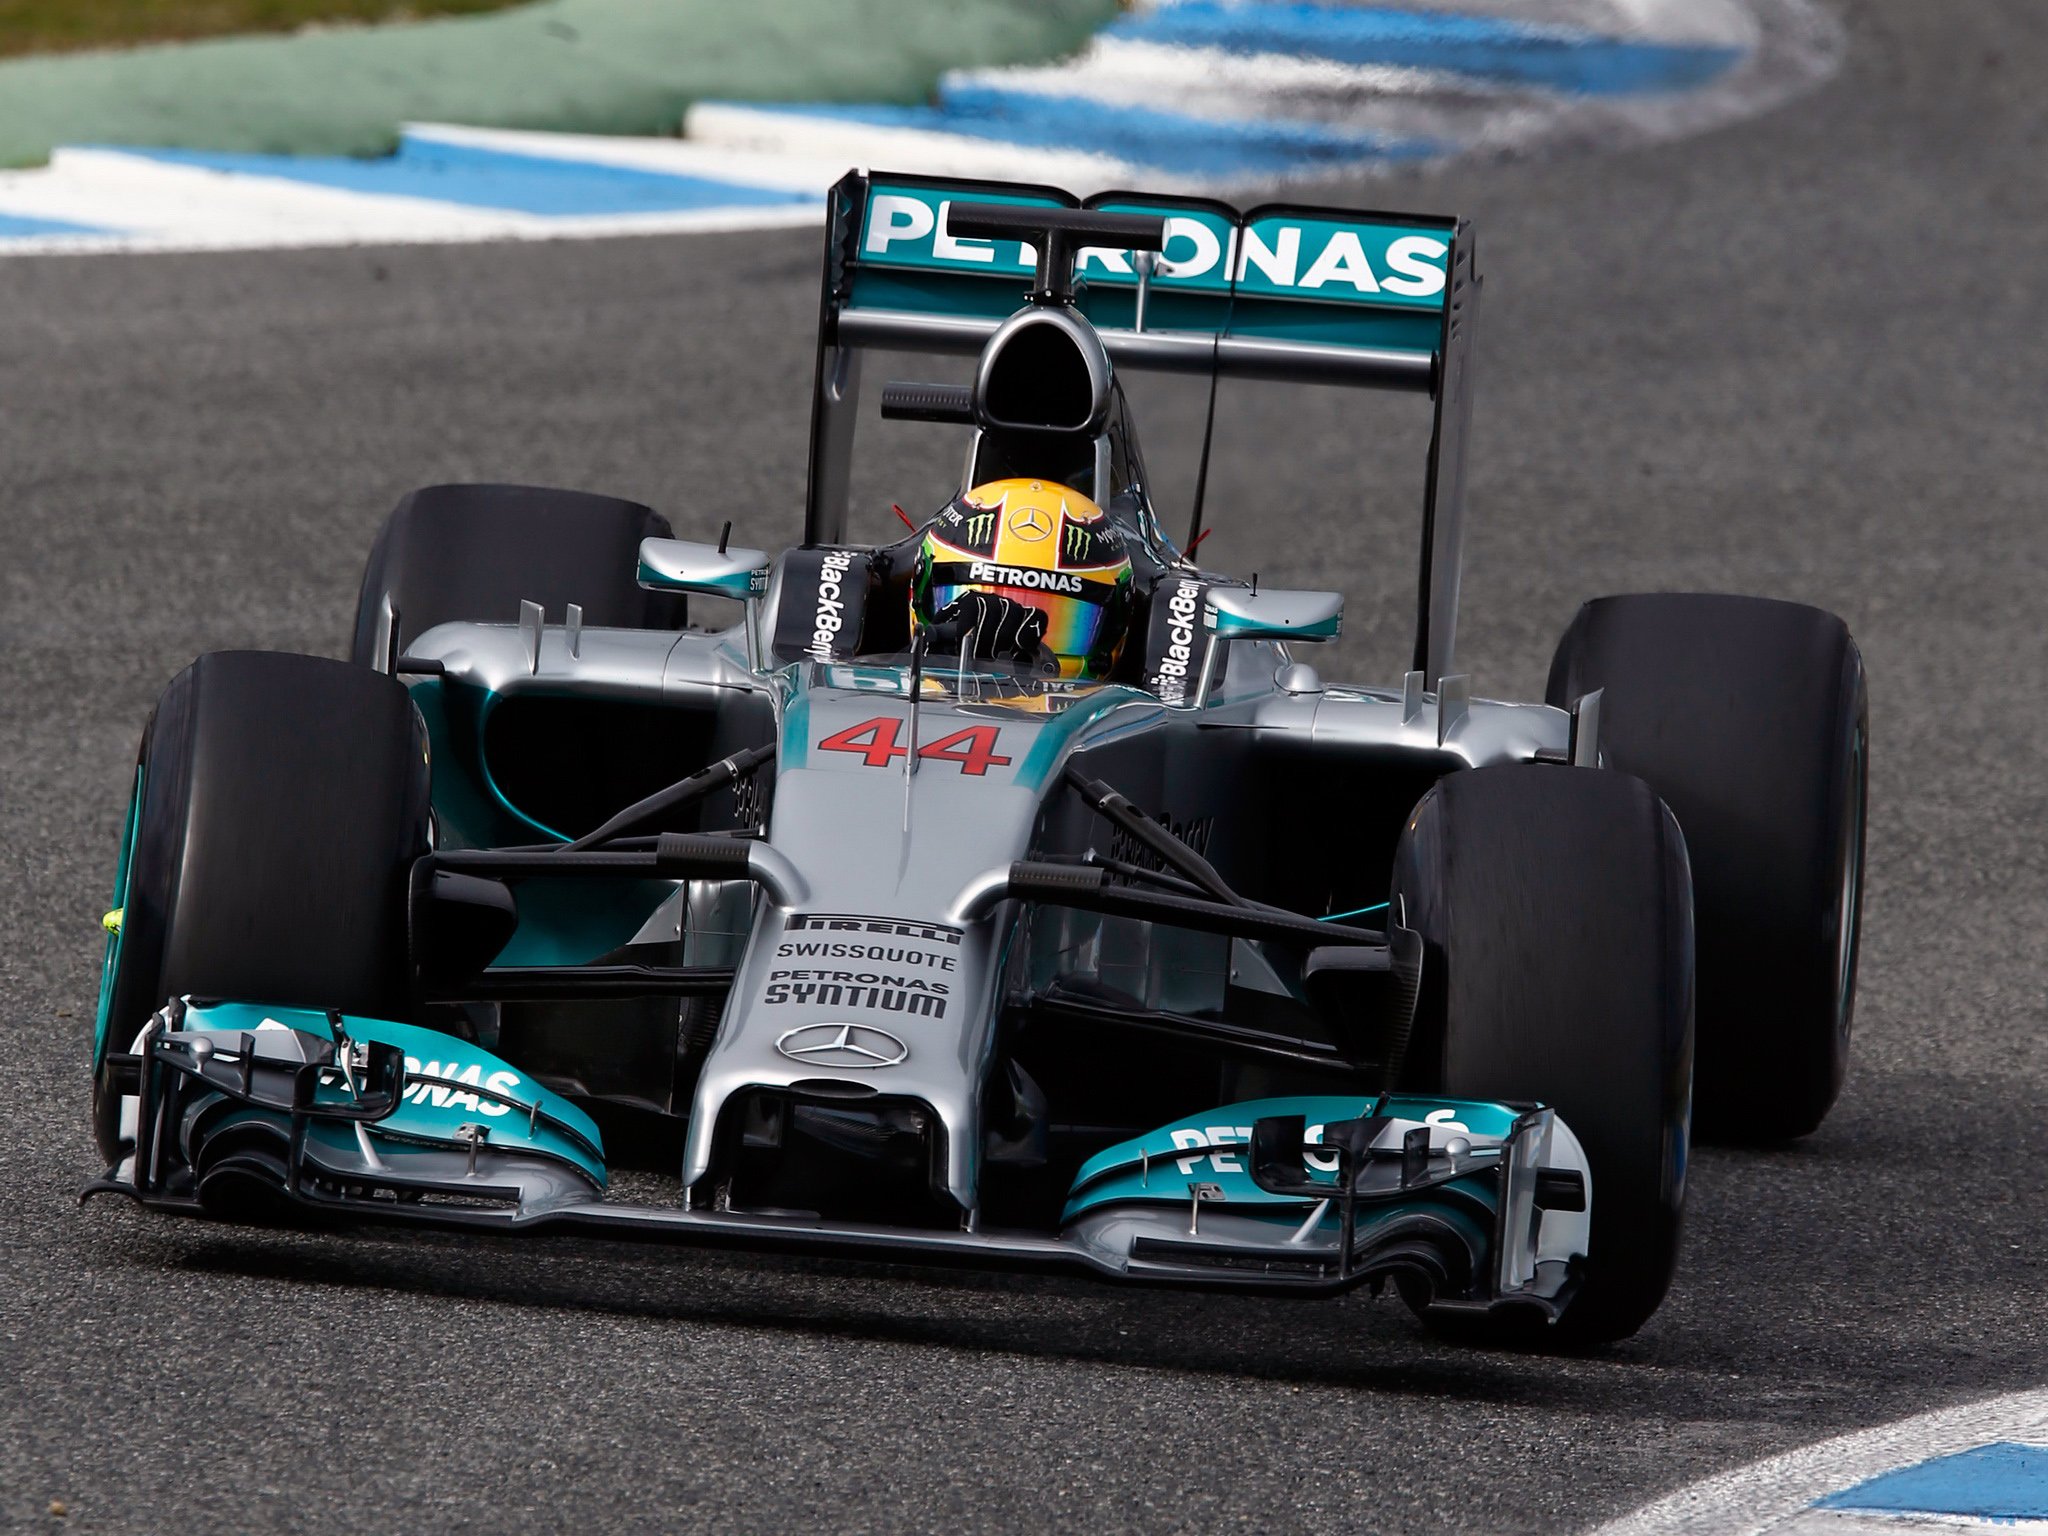 2014, Mercedes, Benz, Amg, F 1, W05, Formula, Race, Racing Wallpaper